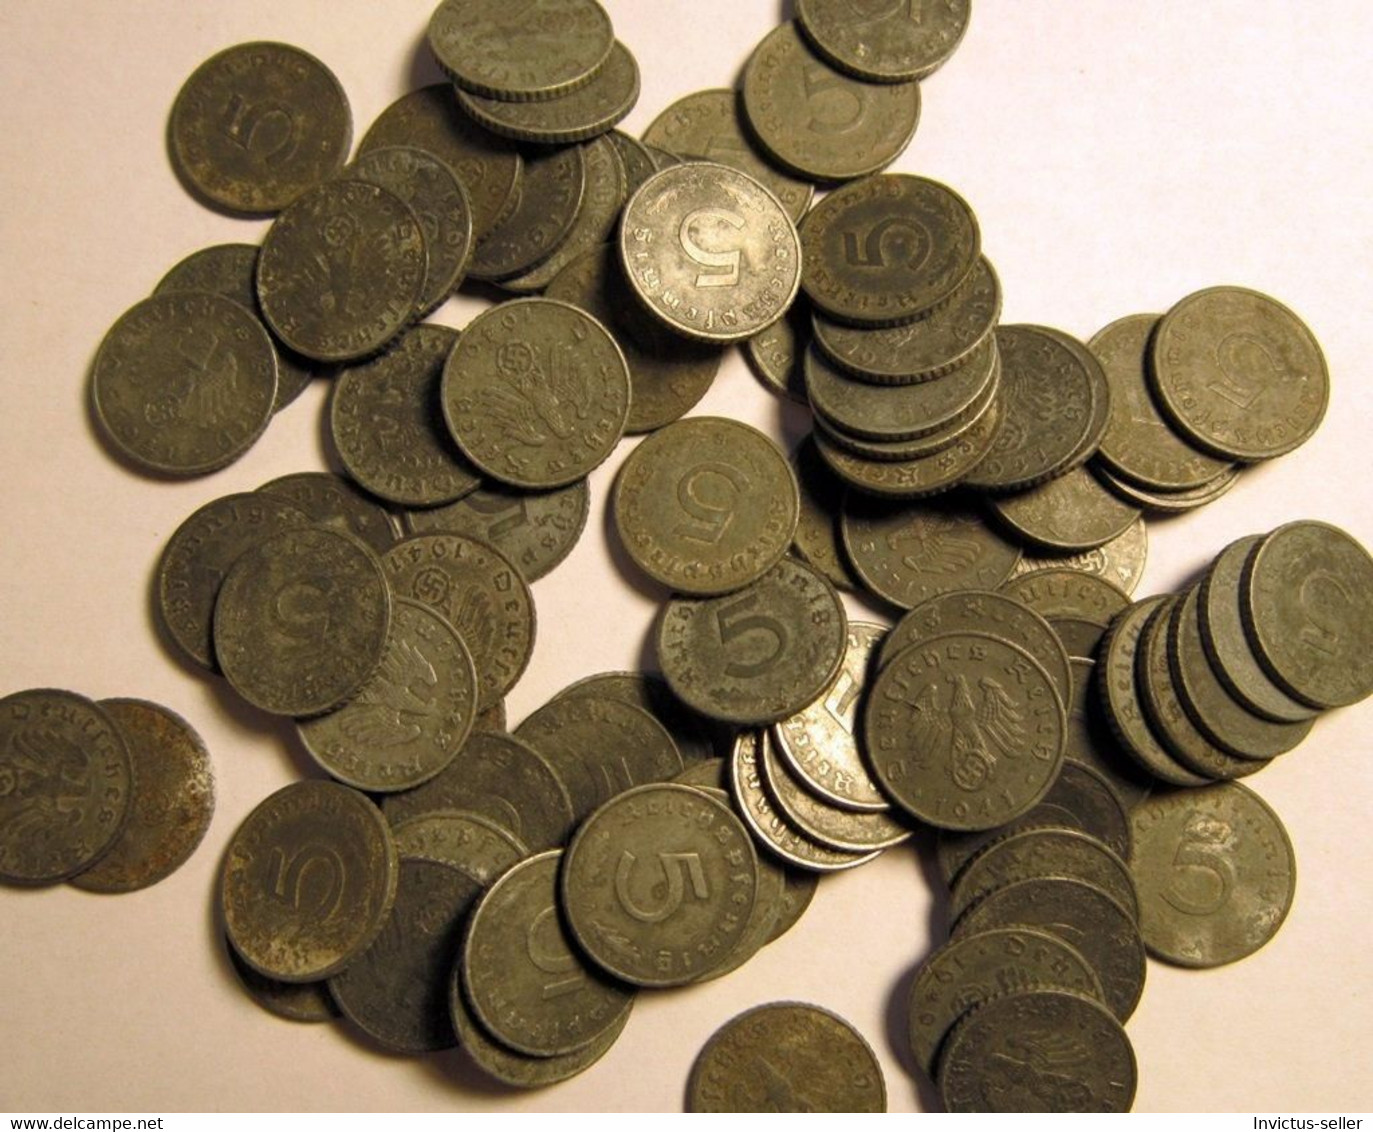 MONETA 5 PFENNIG WW2 1940 CATEGORIA  D MUNICH  GERMAN COIN REICH GERMANY - 5 Reichspfennig